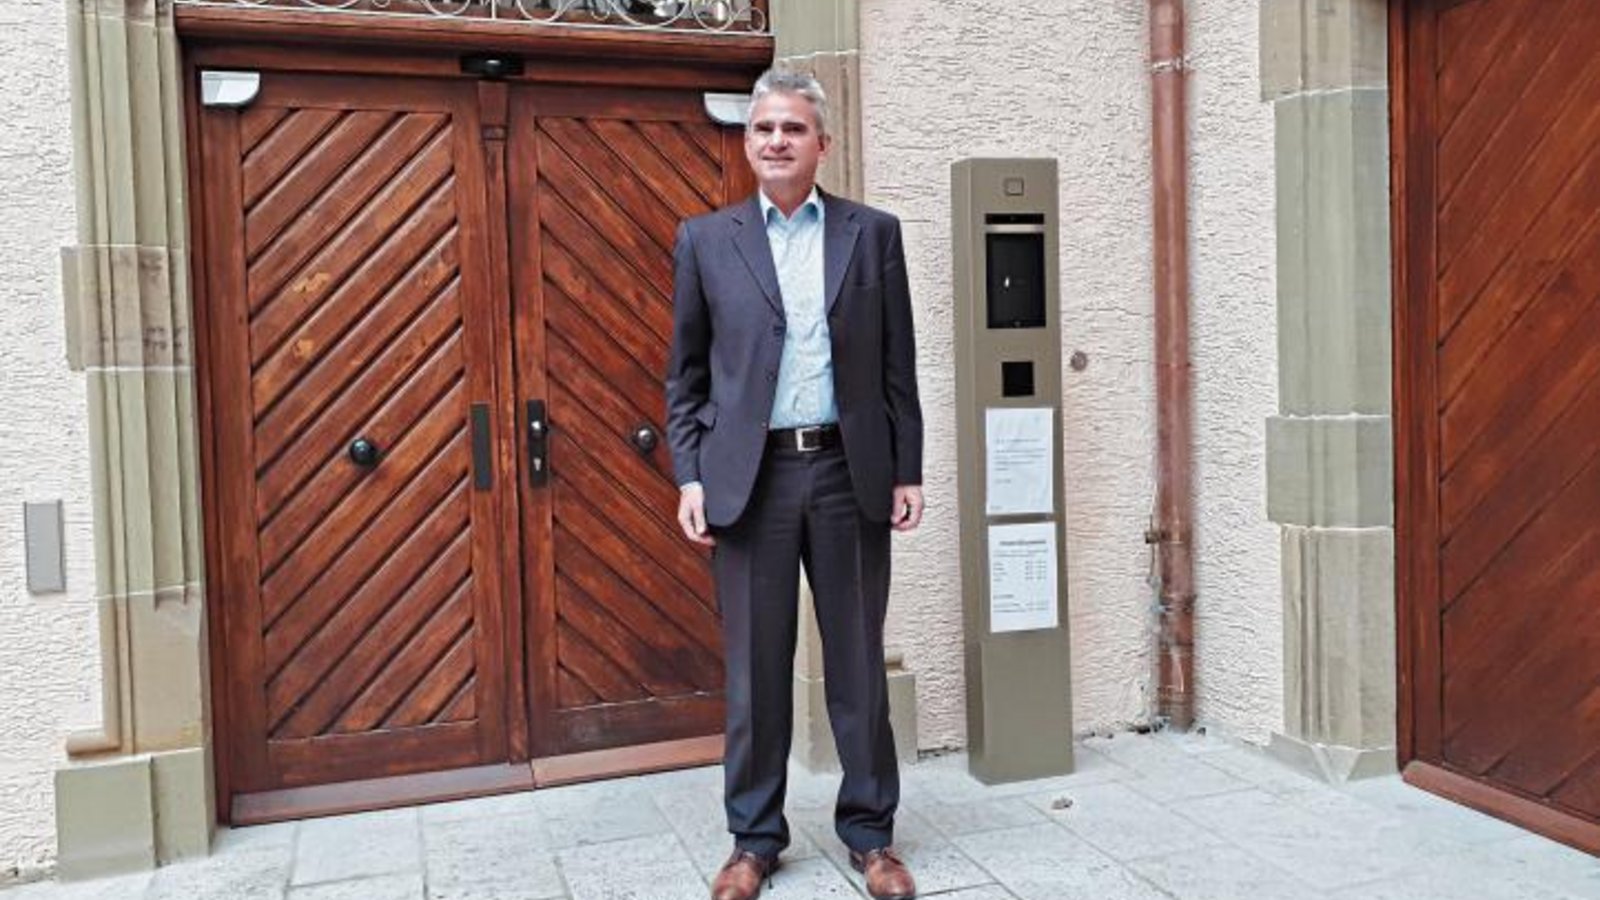 Sachsenheims Bürgermeister Holger Albrich blickt vor dem sanierten Wasserschloss in Sachsenheim trotz knapper Haushaltslage optimistisch in die Zukunft.  Fotos: Glemser